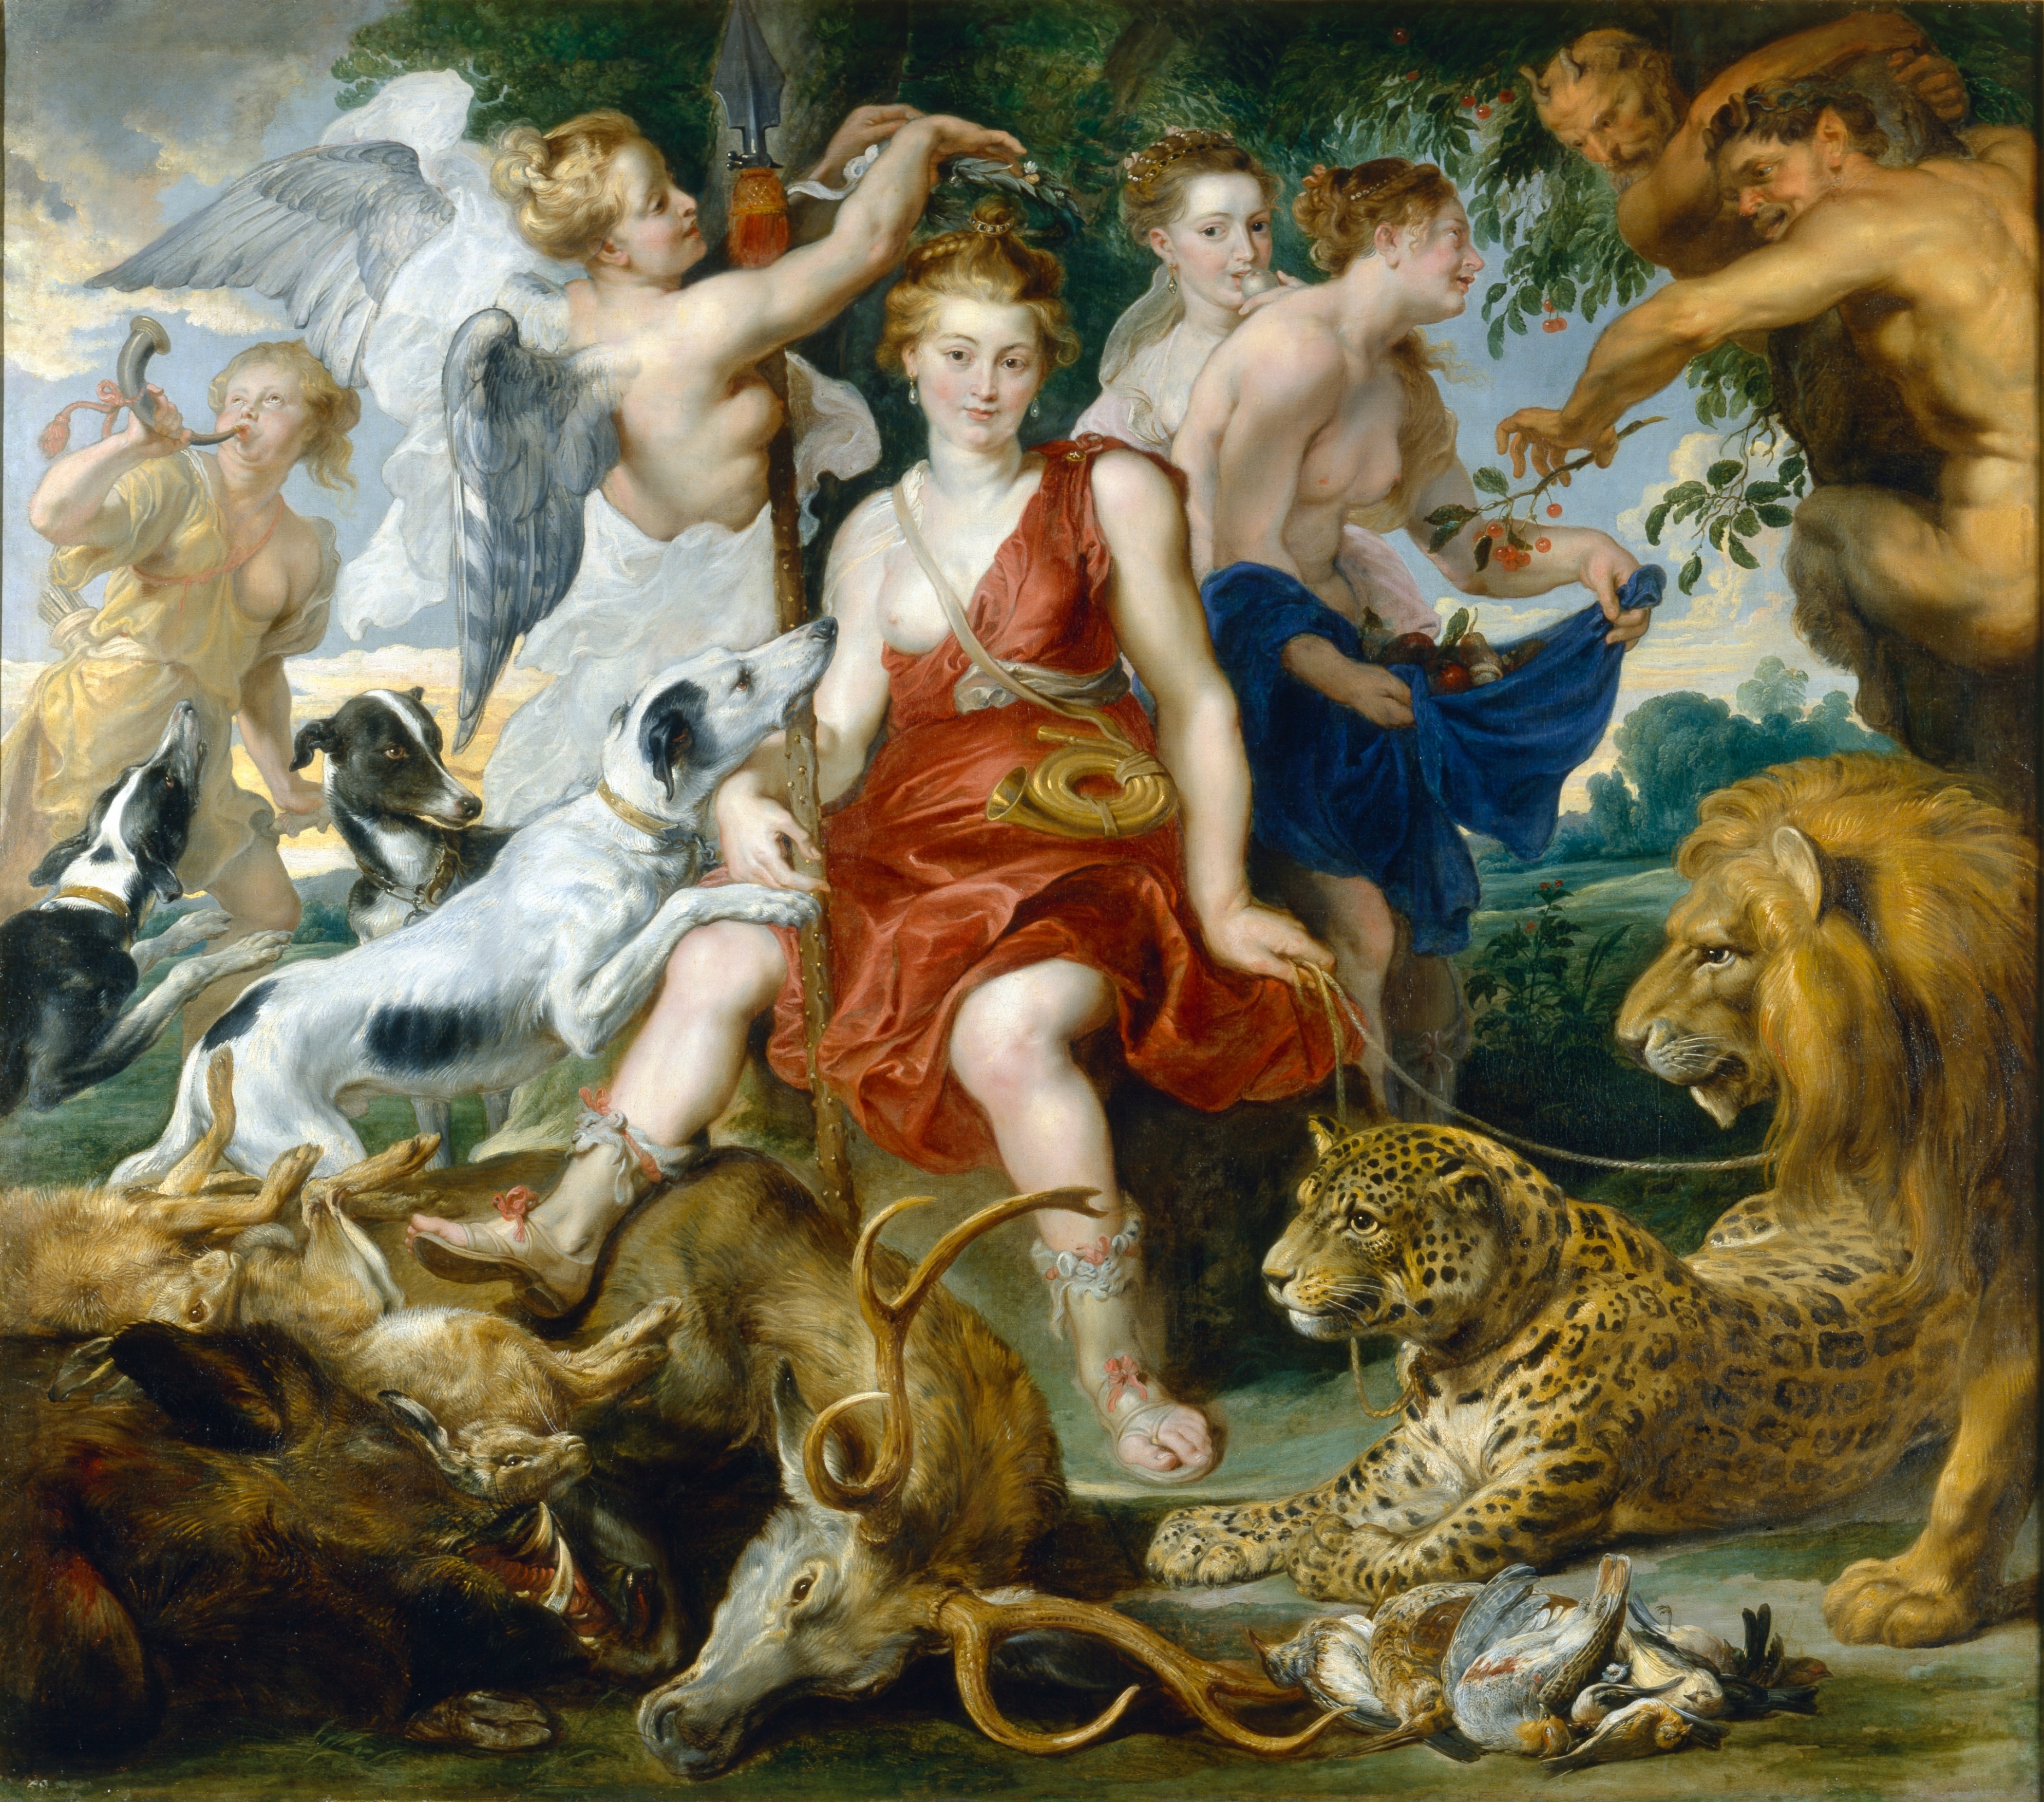 Rubens, Peter Paul / Snyders, Frans (?): Die Krönung der Diana. GK I 6293. (Stiftung Preußische Schlösser und Gärten Berlin-Brandenburg CC BY-NC-SA)